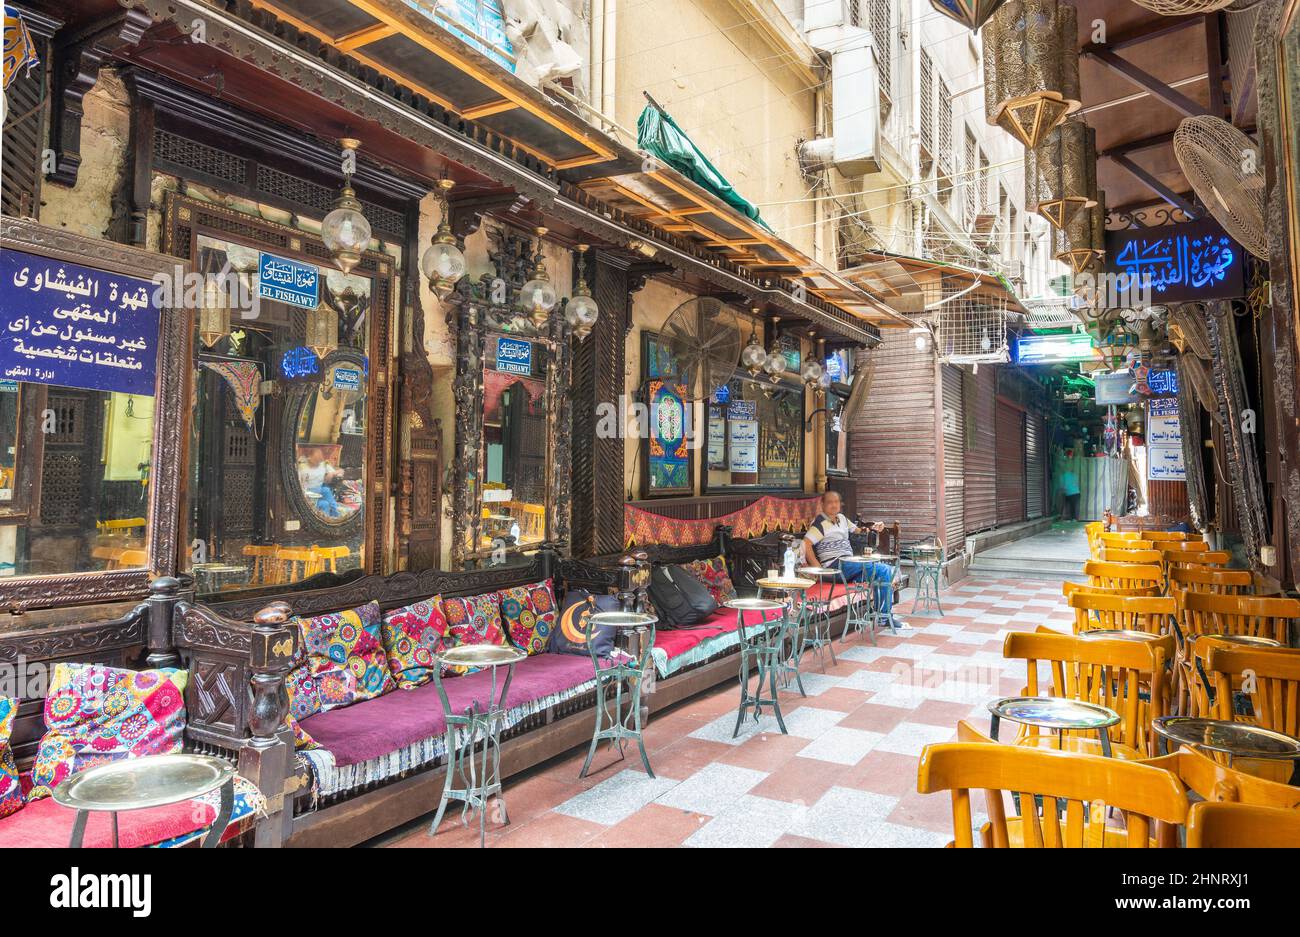 El antiguo café Fishawi, en el bazar Mamluk Khan al-Khalili, cerrado durante el cierre de Covid-19, El Cairo, Egipto Foto de stock